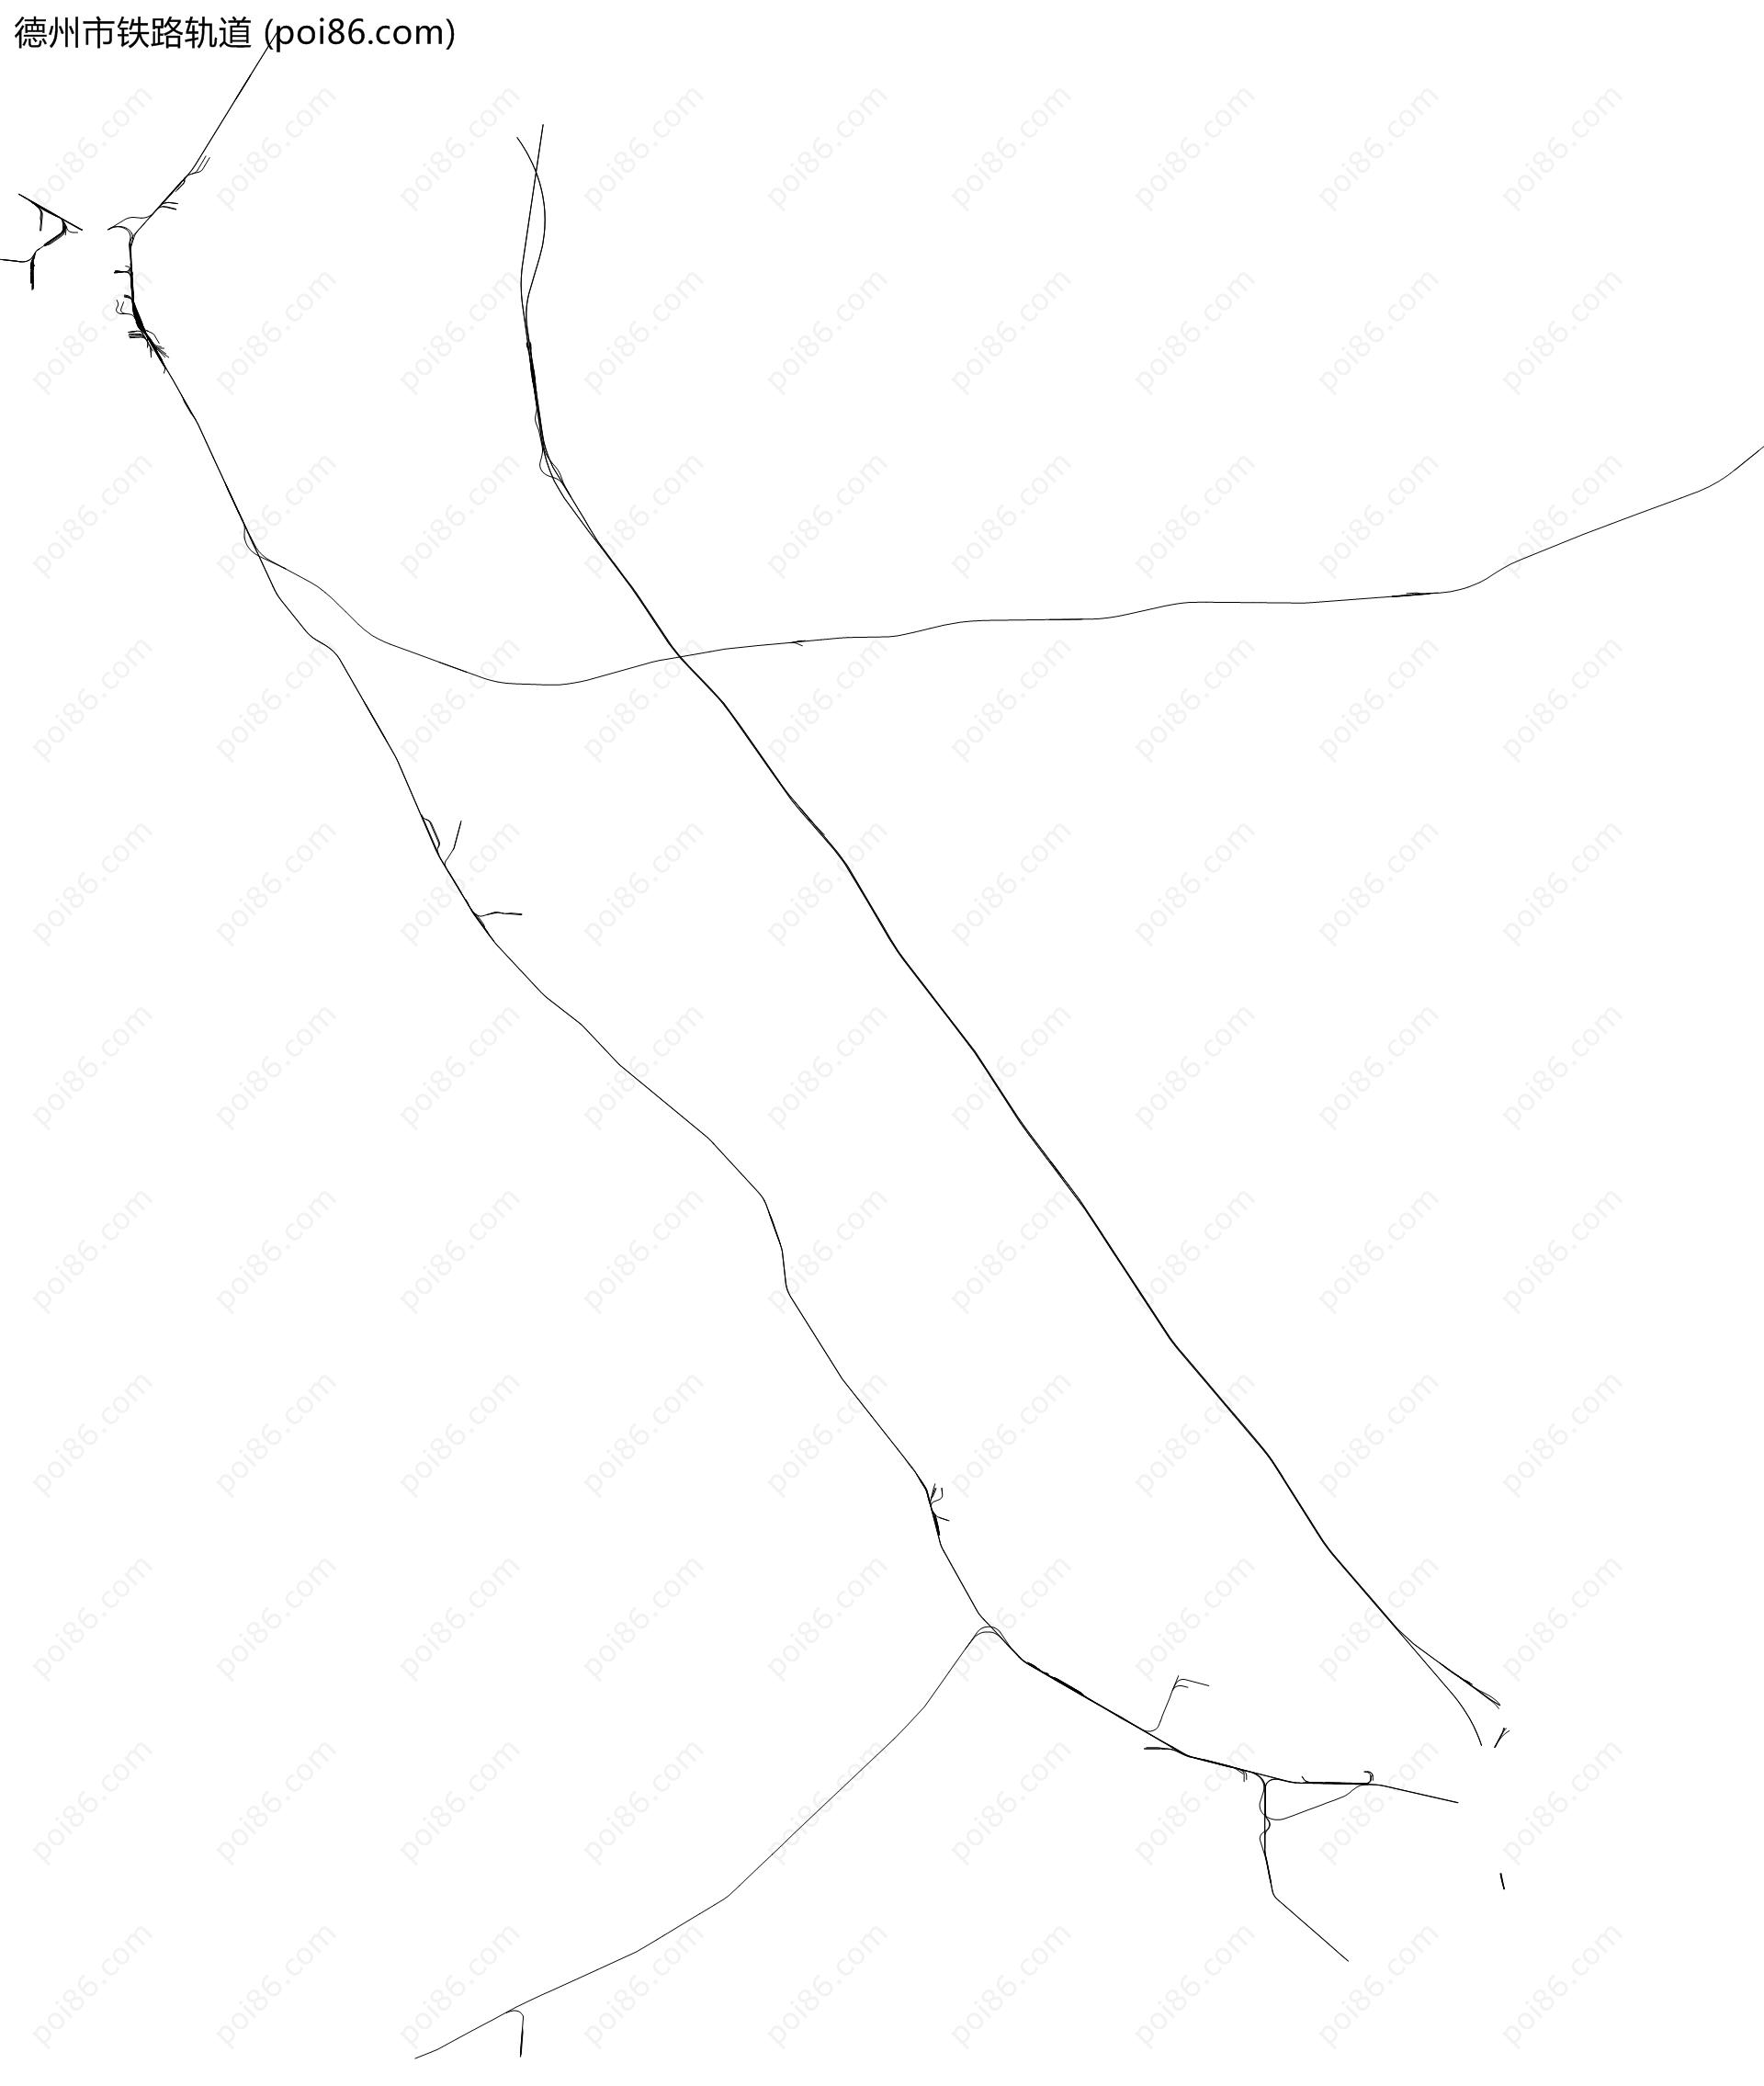 德州市铁路轨道地图